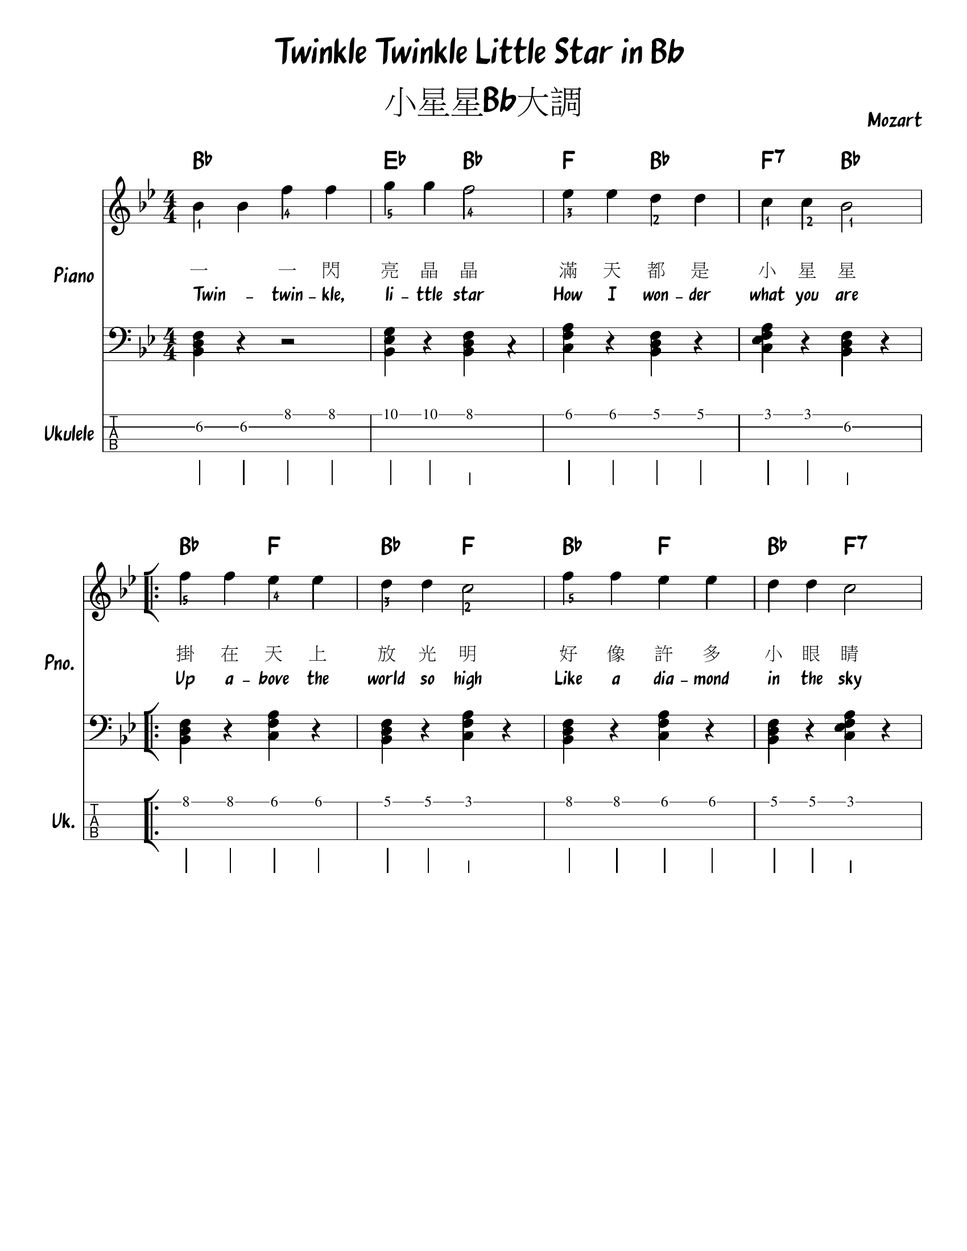 Mozart Twinkle twinkle little stars in all keys (Chord/Melody/Piano/Ukulele tab) (Lead Sheets